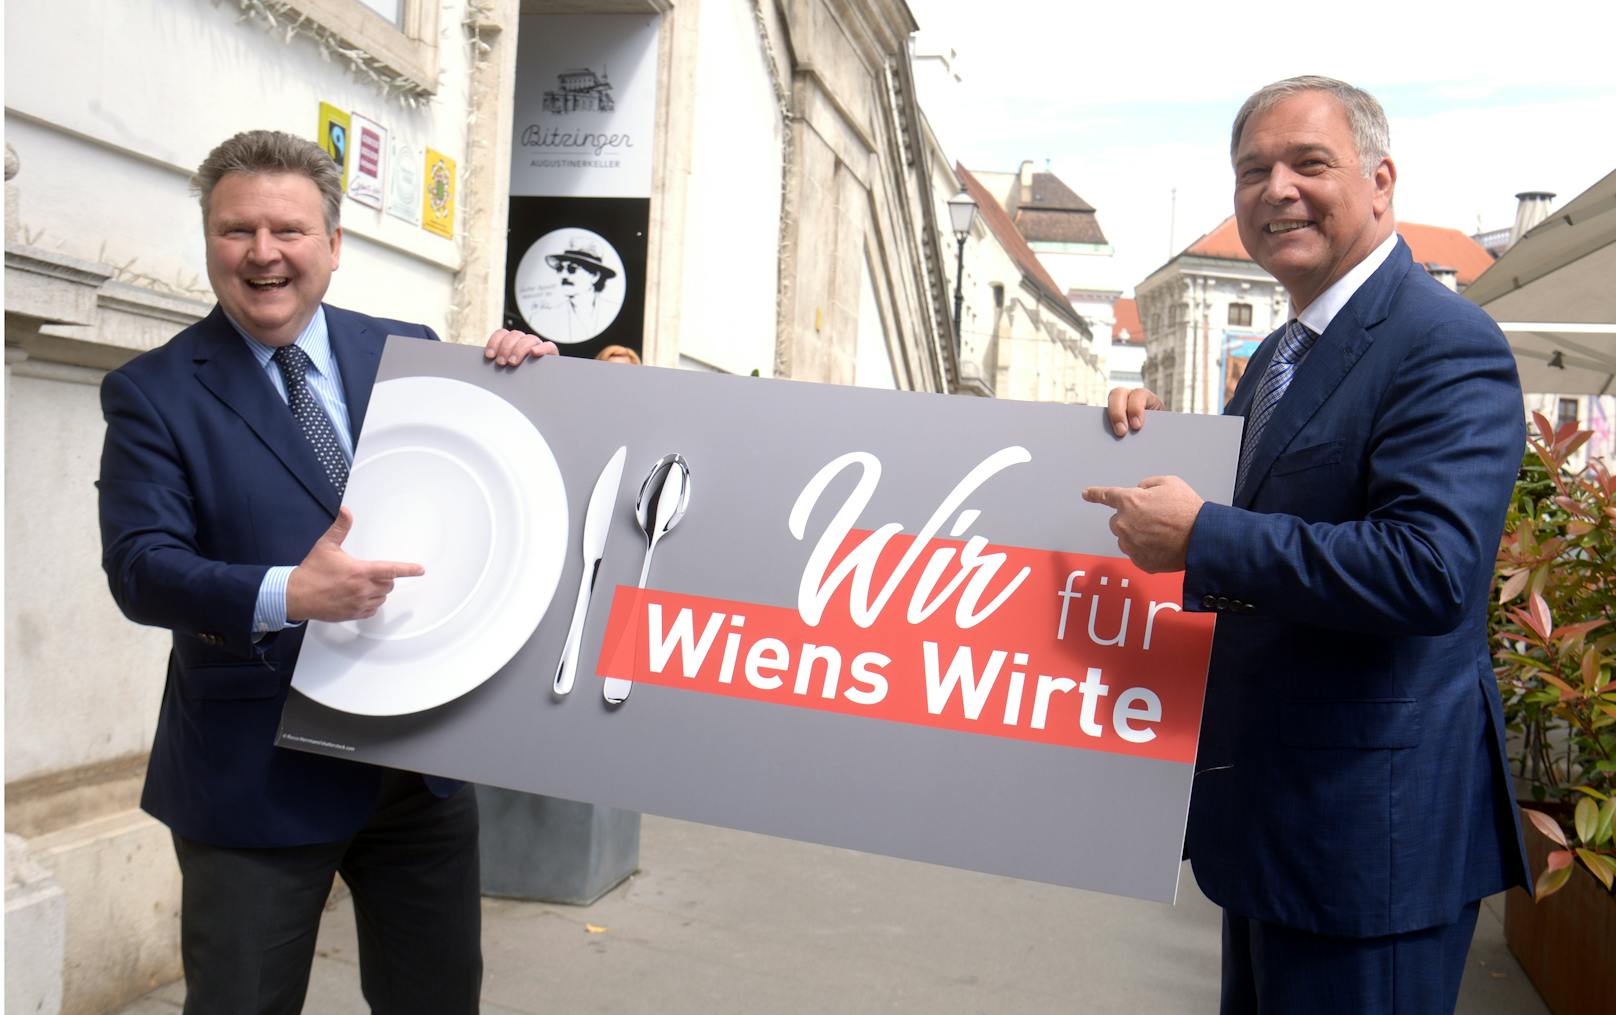 Wiens Bürgermeister Michael Ludwig (SPÖ) und Wirtschaftskammer Präsident Walter Ruck (ÖVP) präsentierten einen Geldbonus für alle Wiener.